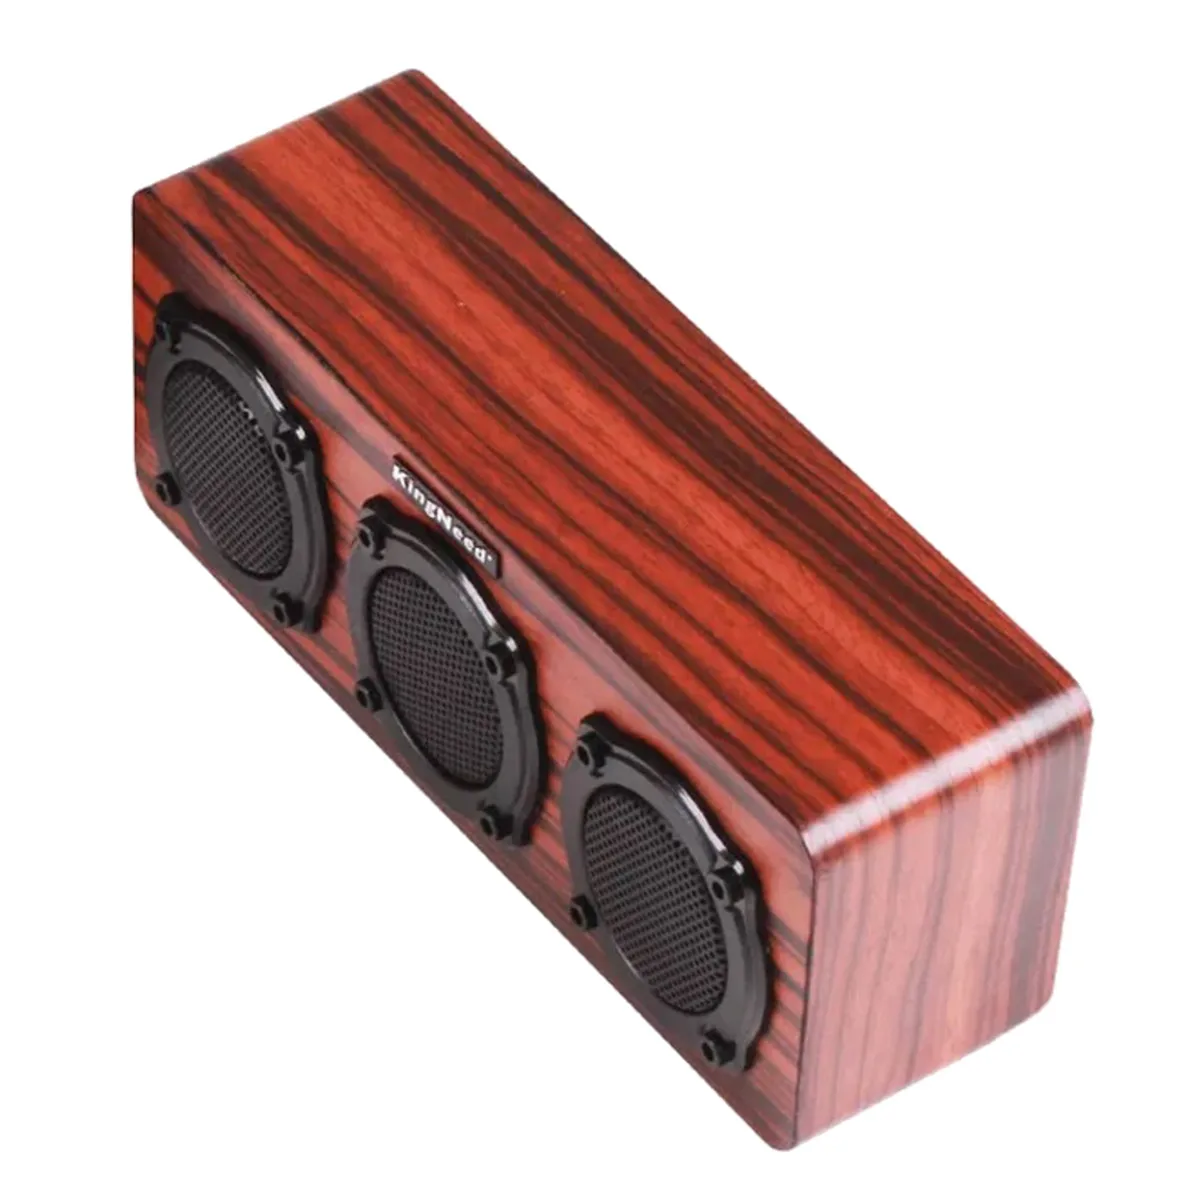 60db звук деревянный Blurtooth открытый портативный динамик Hifi беспроводной бас студия стерео 2 Ster динамик s 1 вибрационная мембрана